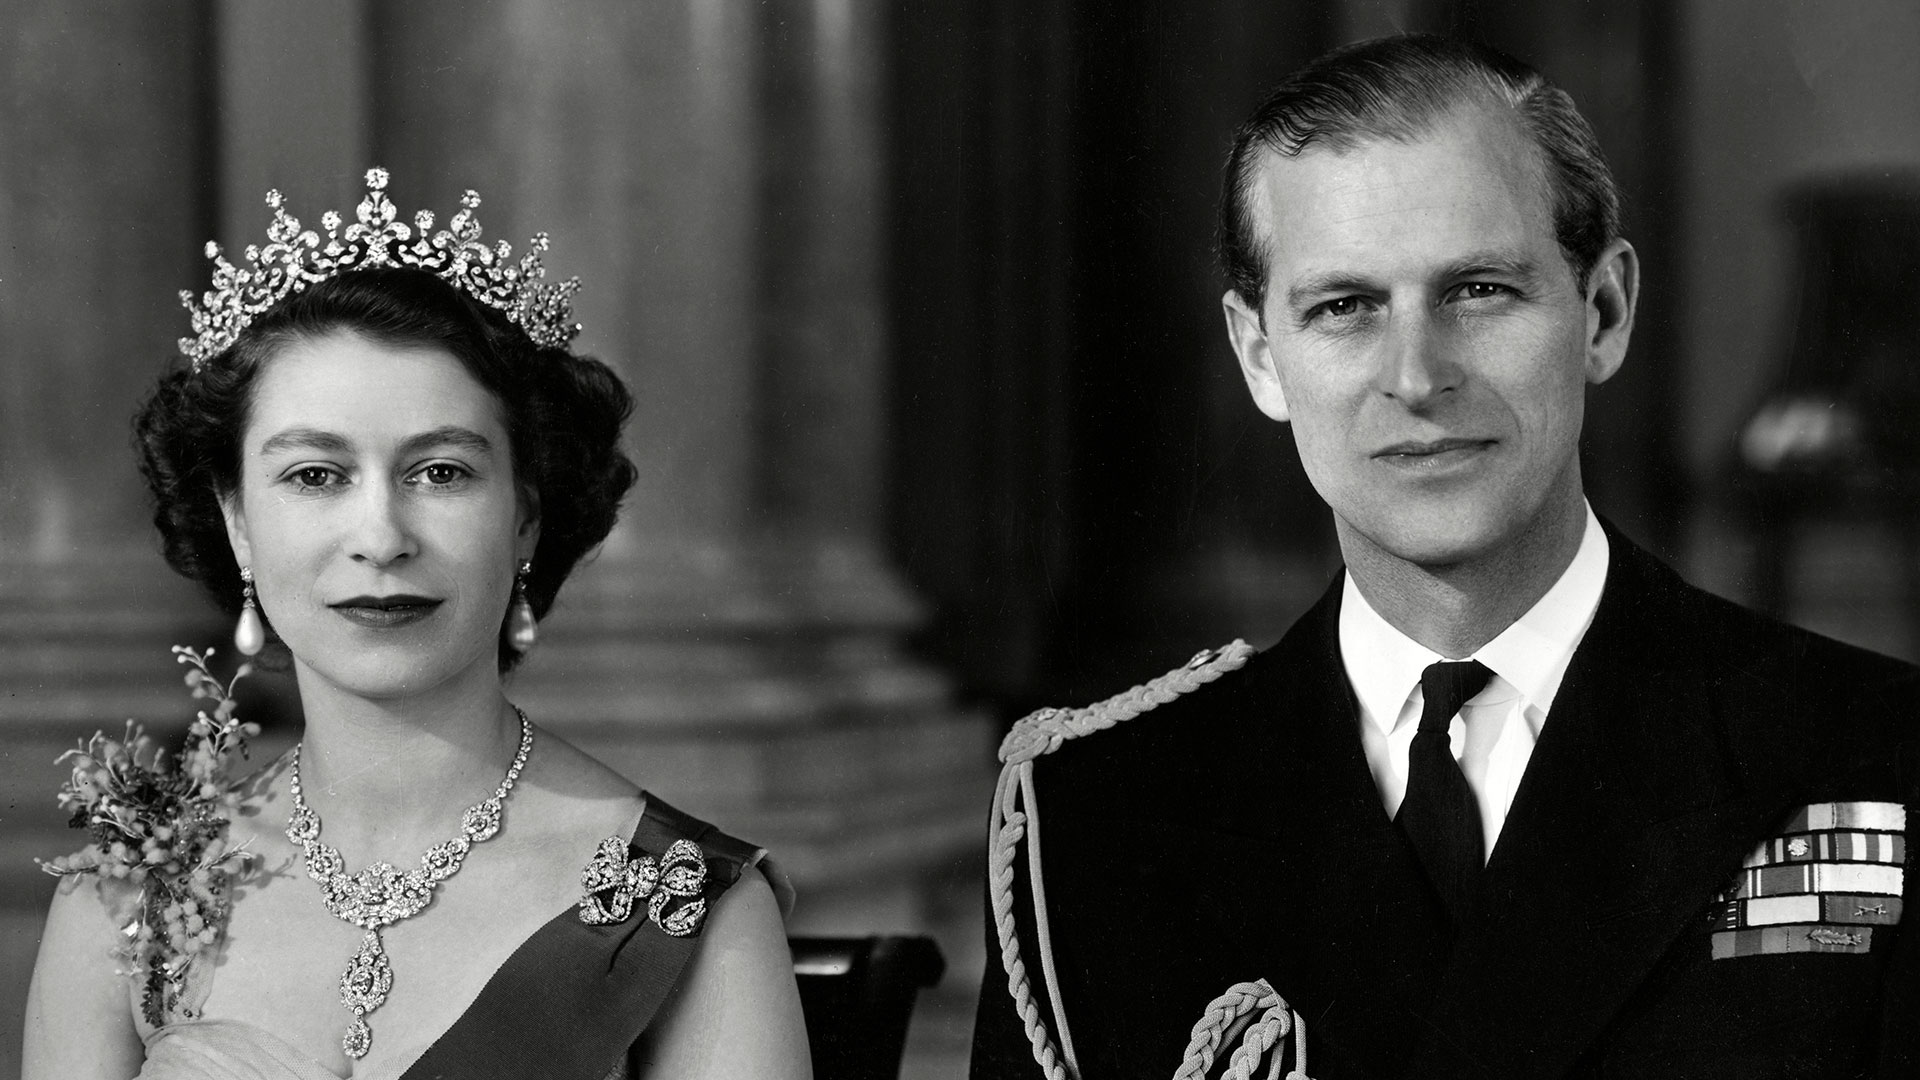 La reina Isabel II y Felipe, duque de Edimburgo, fotografiados juntos en la gran entrada del Palacio de Buckingham en 1954. El príncipe murió hoy a los 99 años en el Castillo de Windsor (Shutterstock)